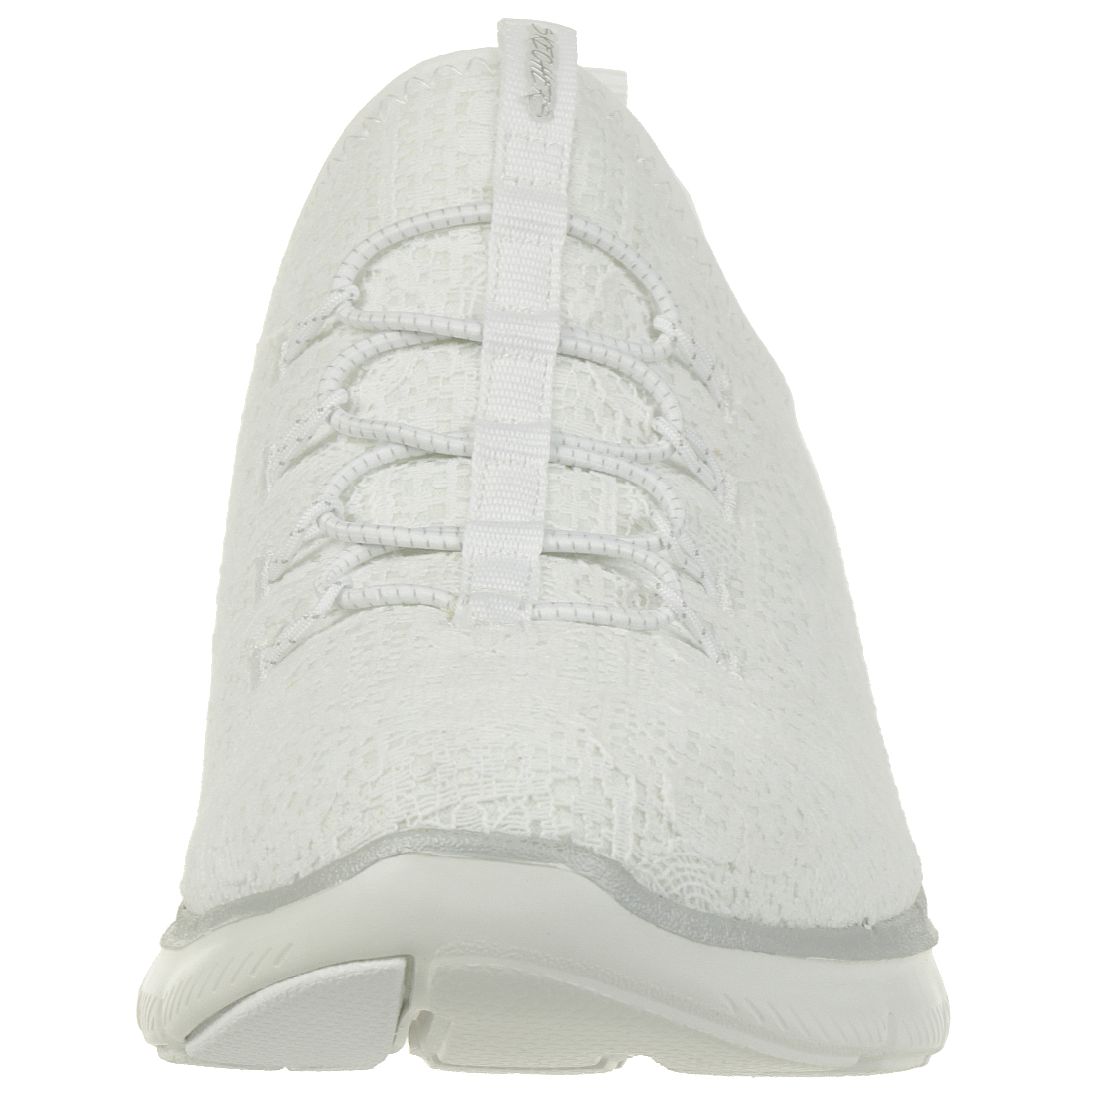 Skechers Flex Appeal 2.0 CLEAR CUT Damen Sneaker Slip on Memory Foam weiss silber 12907